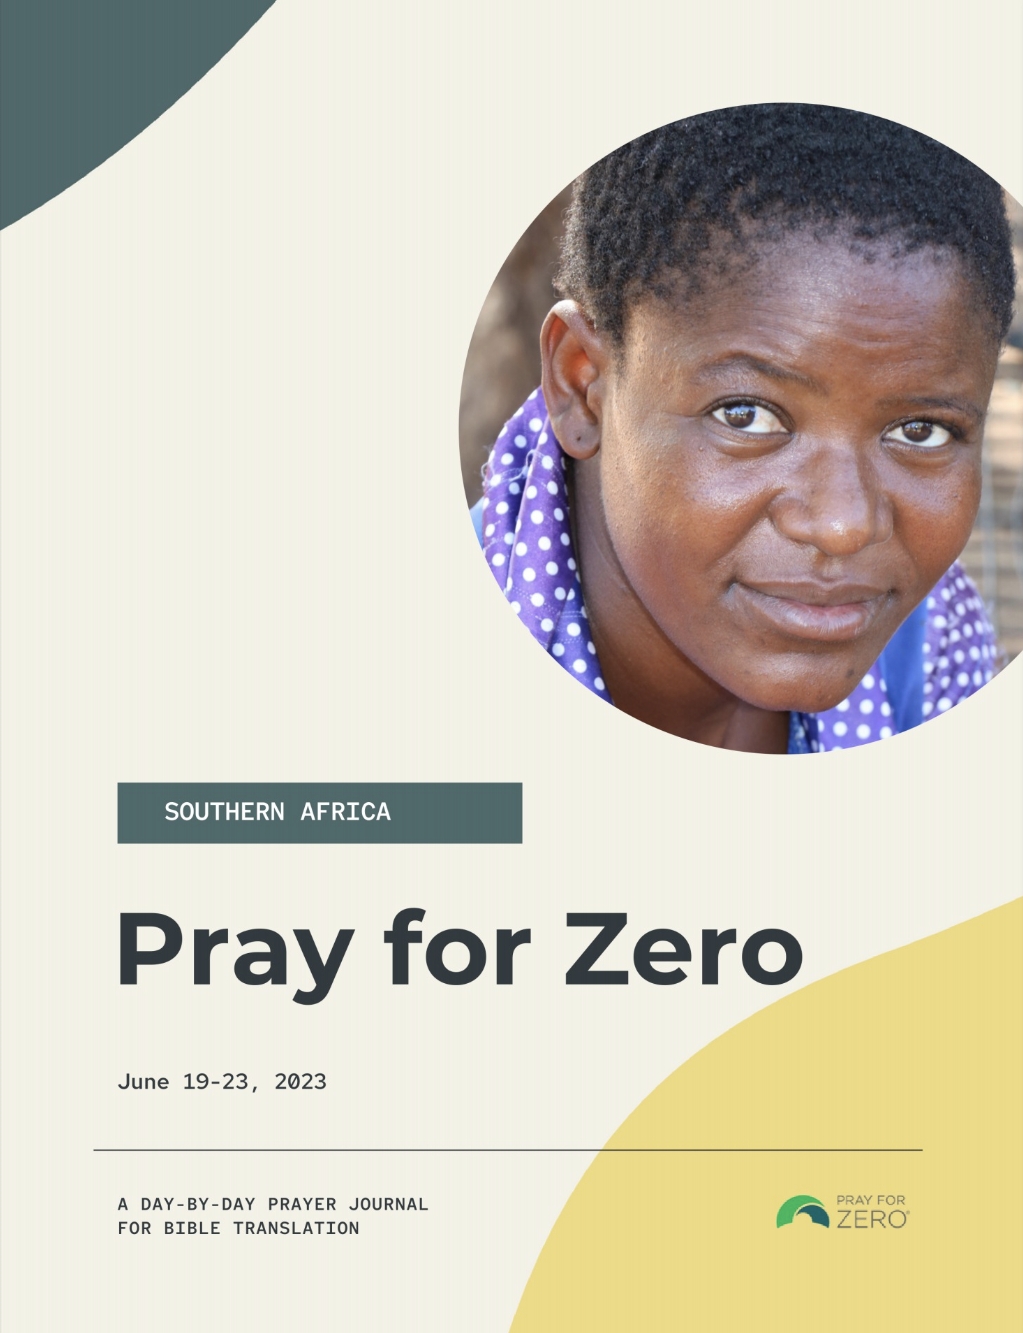 Southern Africa Prayer Journal June 19-23 2023